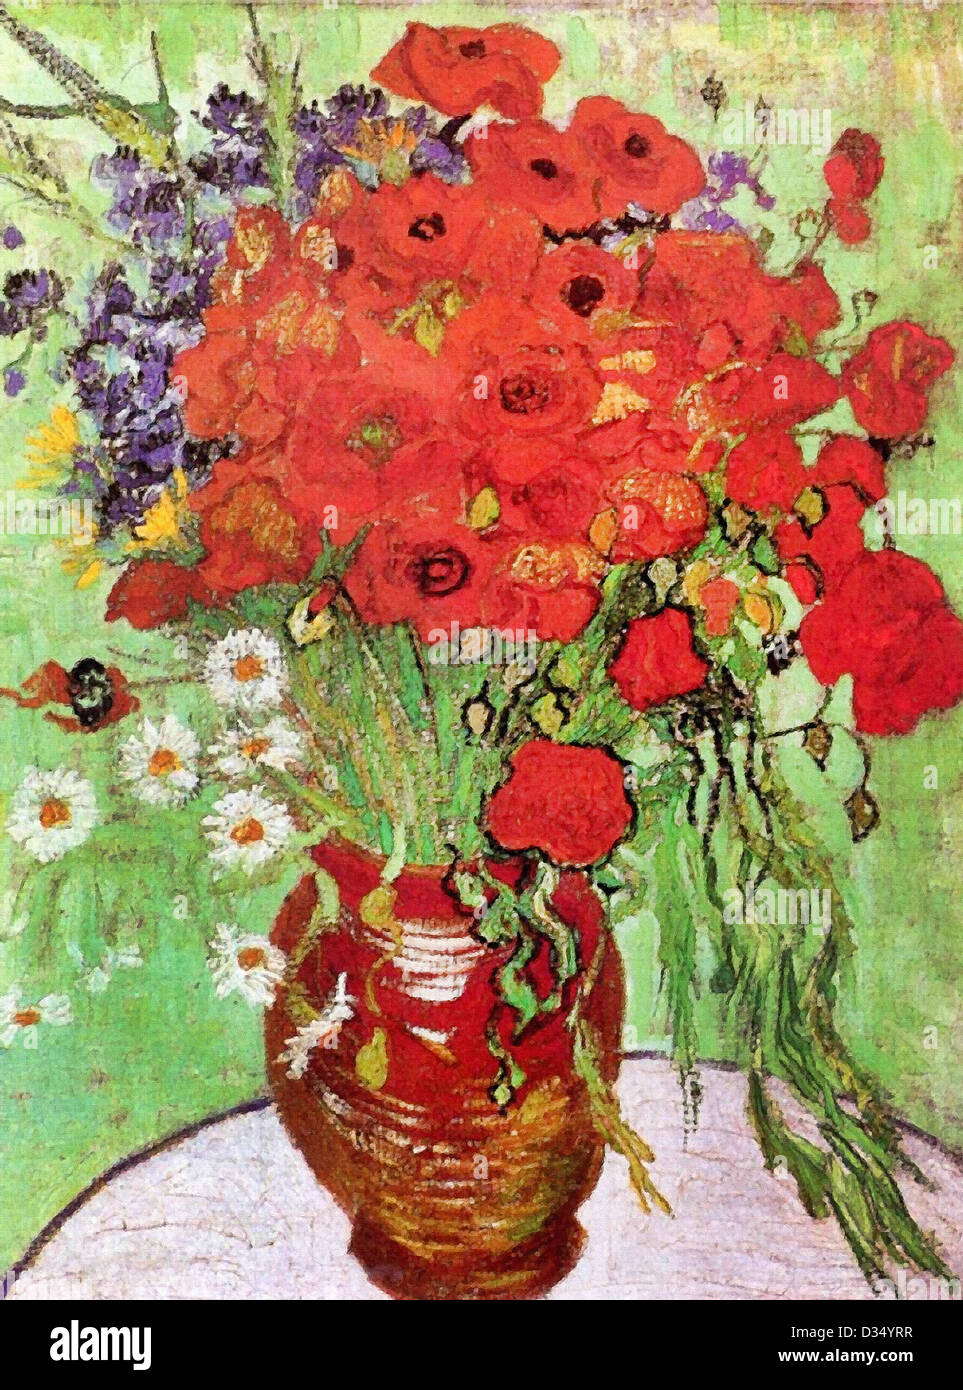 Vincent van Gogh, marguerites et coquelicots rouges. 1890. Le postimpressionnisme. Huile sur toile. Albright Knox Art Gallery, Buffalo, NY, USA. Banque D'Images